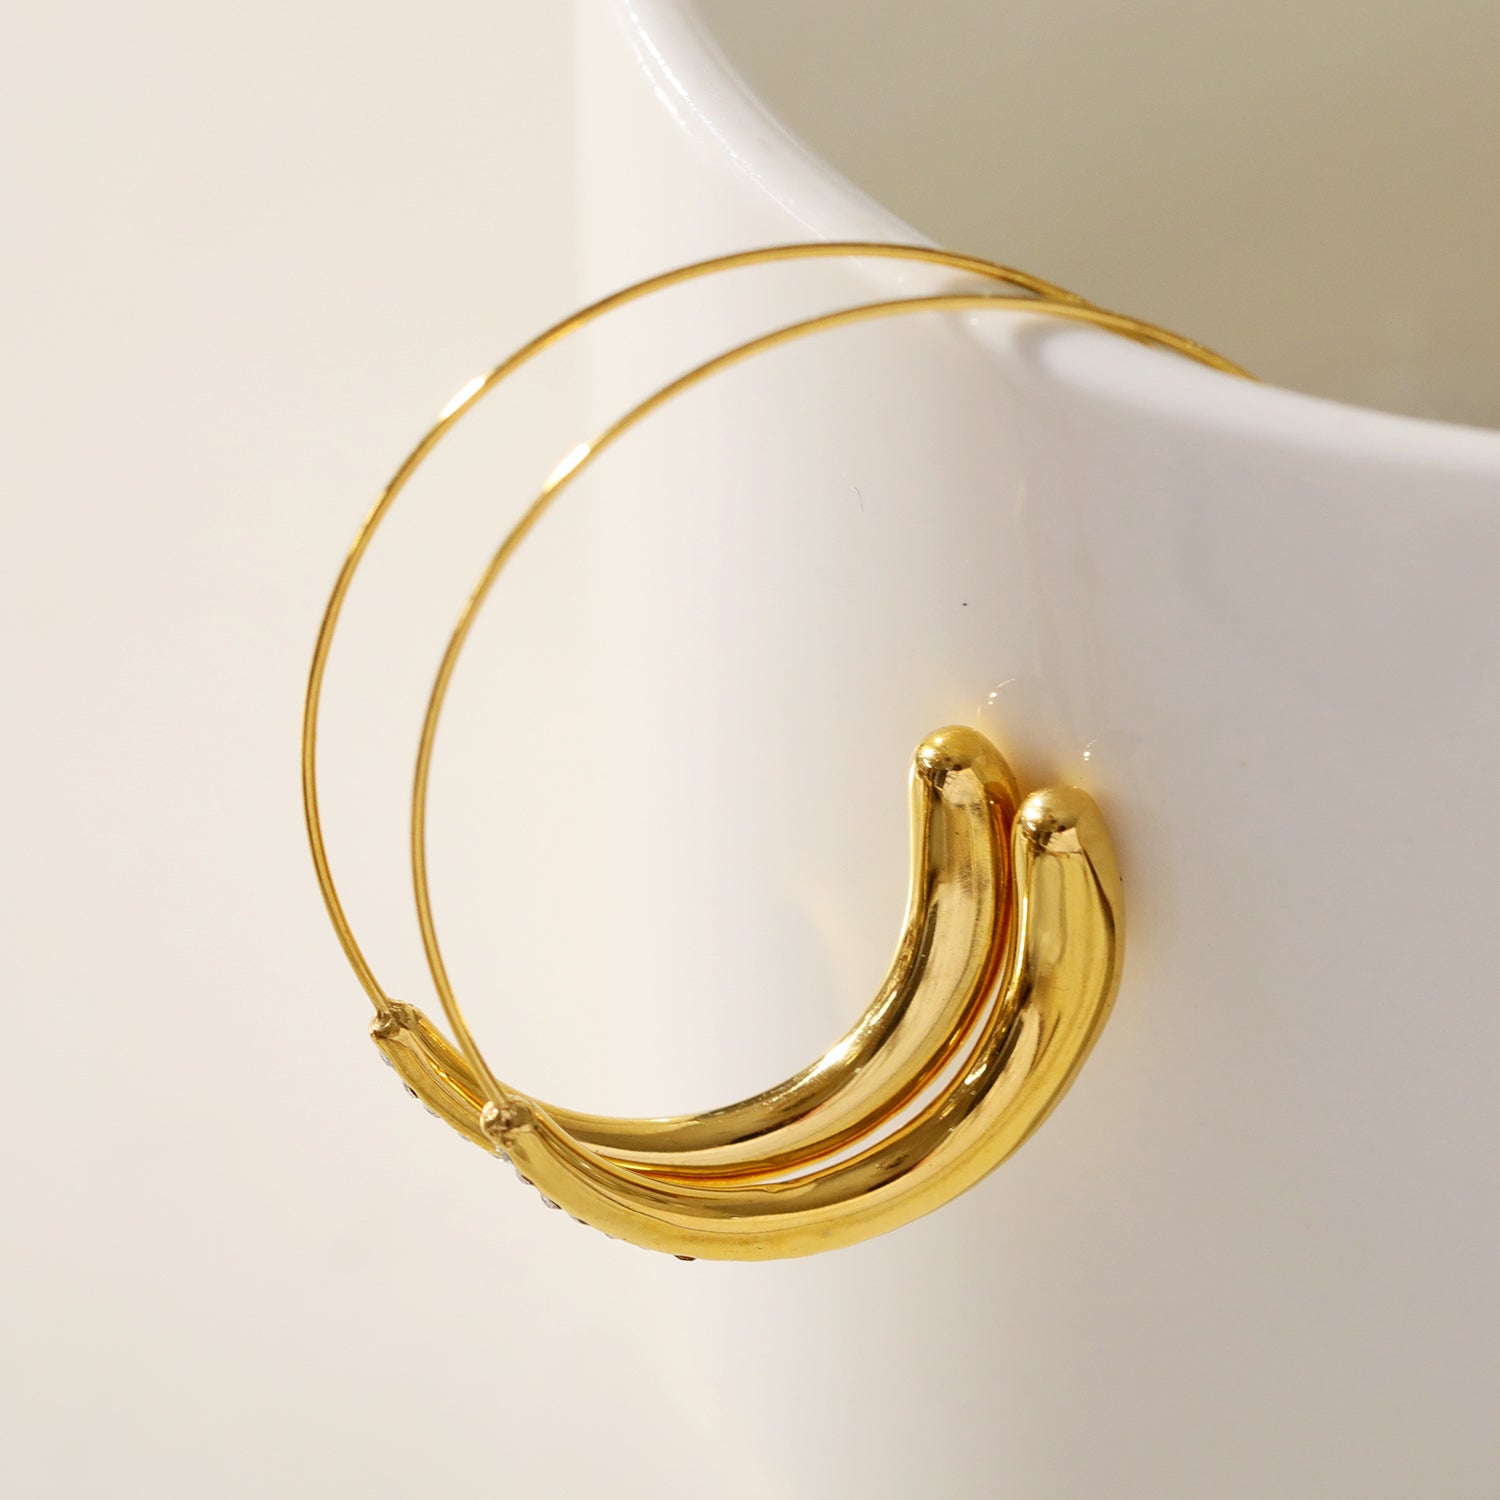 hackney-nine | hackneynine | Style LYSSA 89666: Geometric Earrings - Curved Elegance with Zirconia Sparkle.